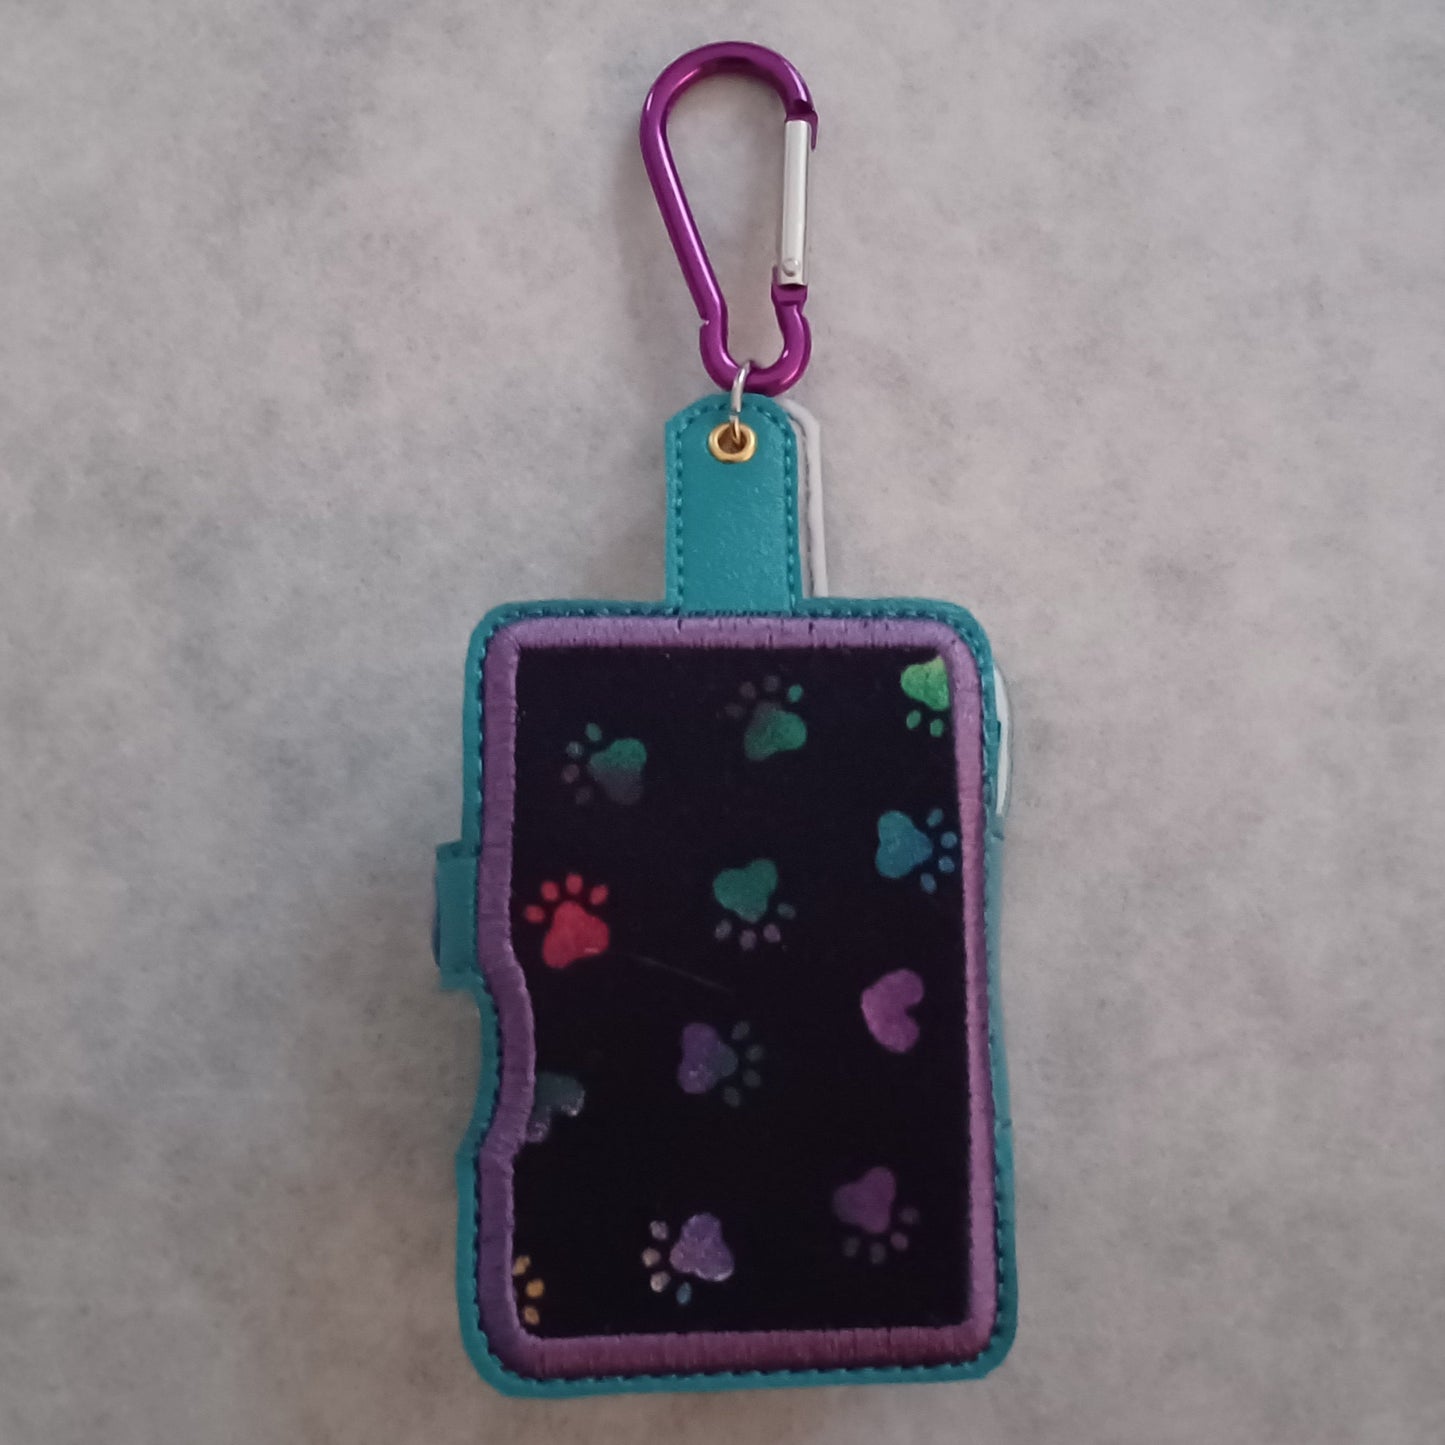 Embroidered Doggie To-Go Holder (Hand sanitizer & poop bag holder)